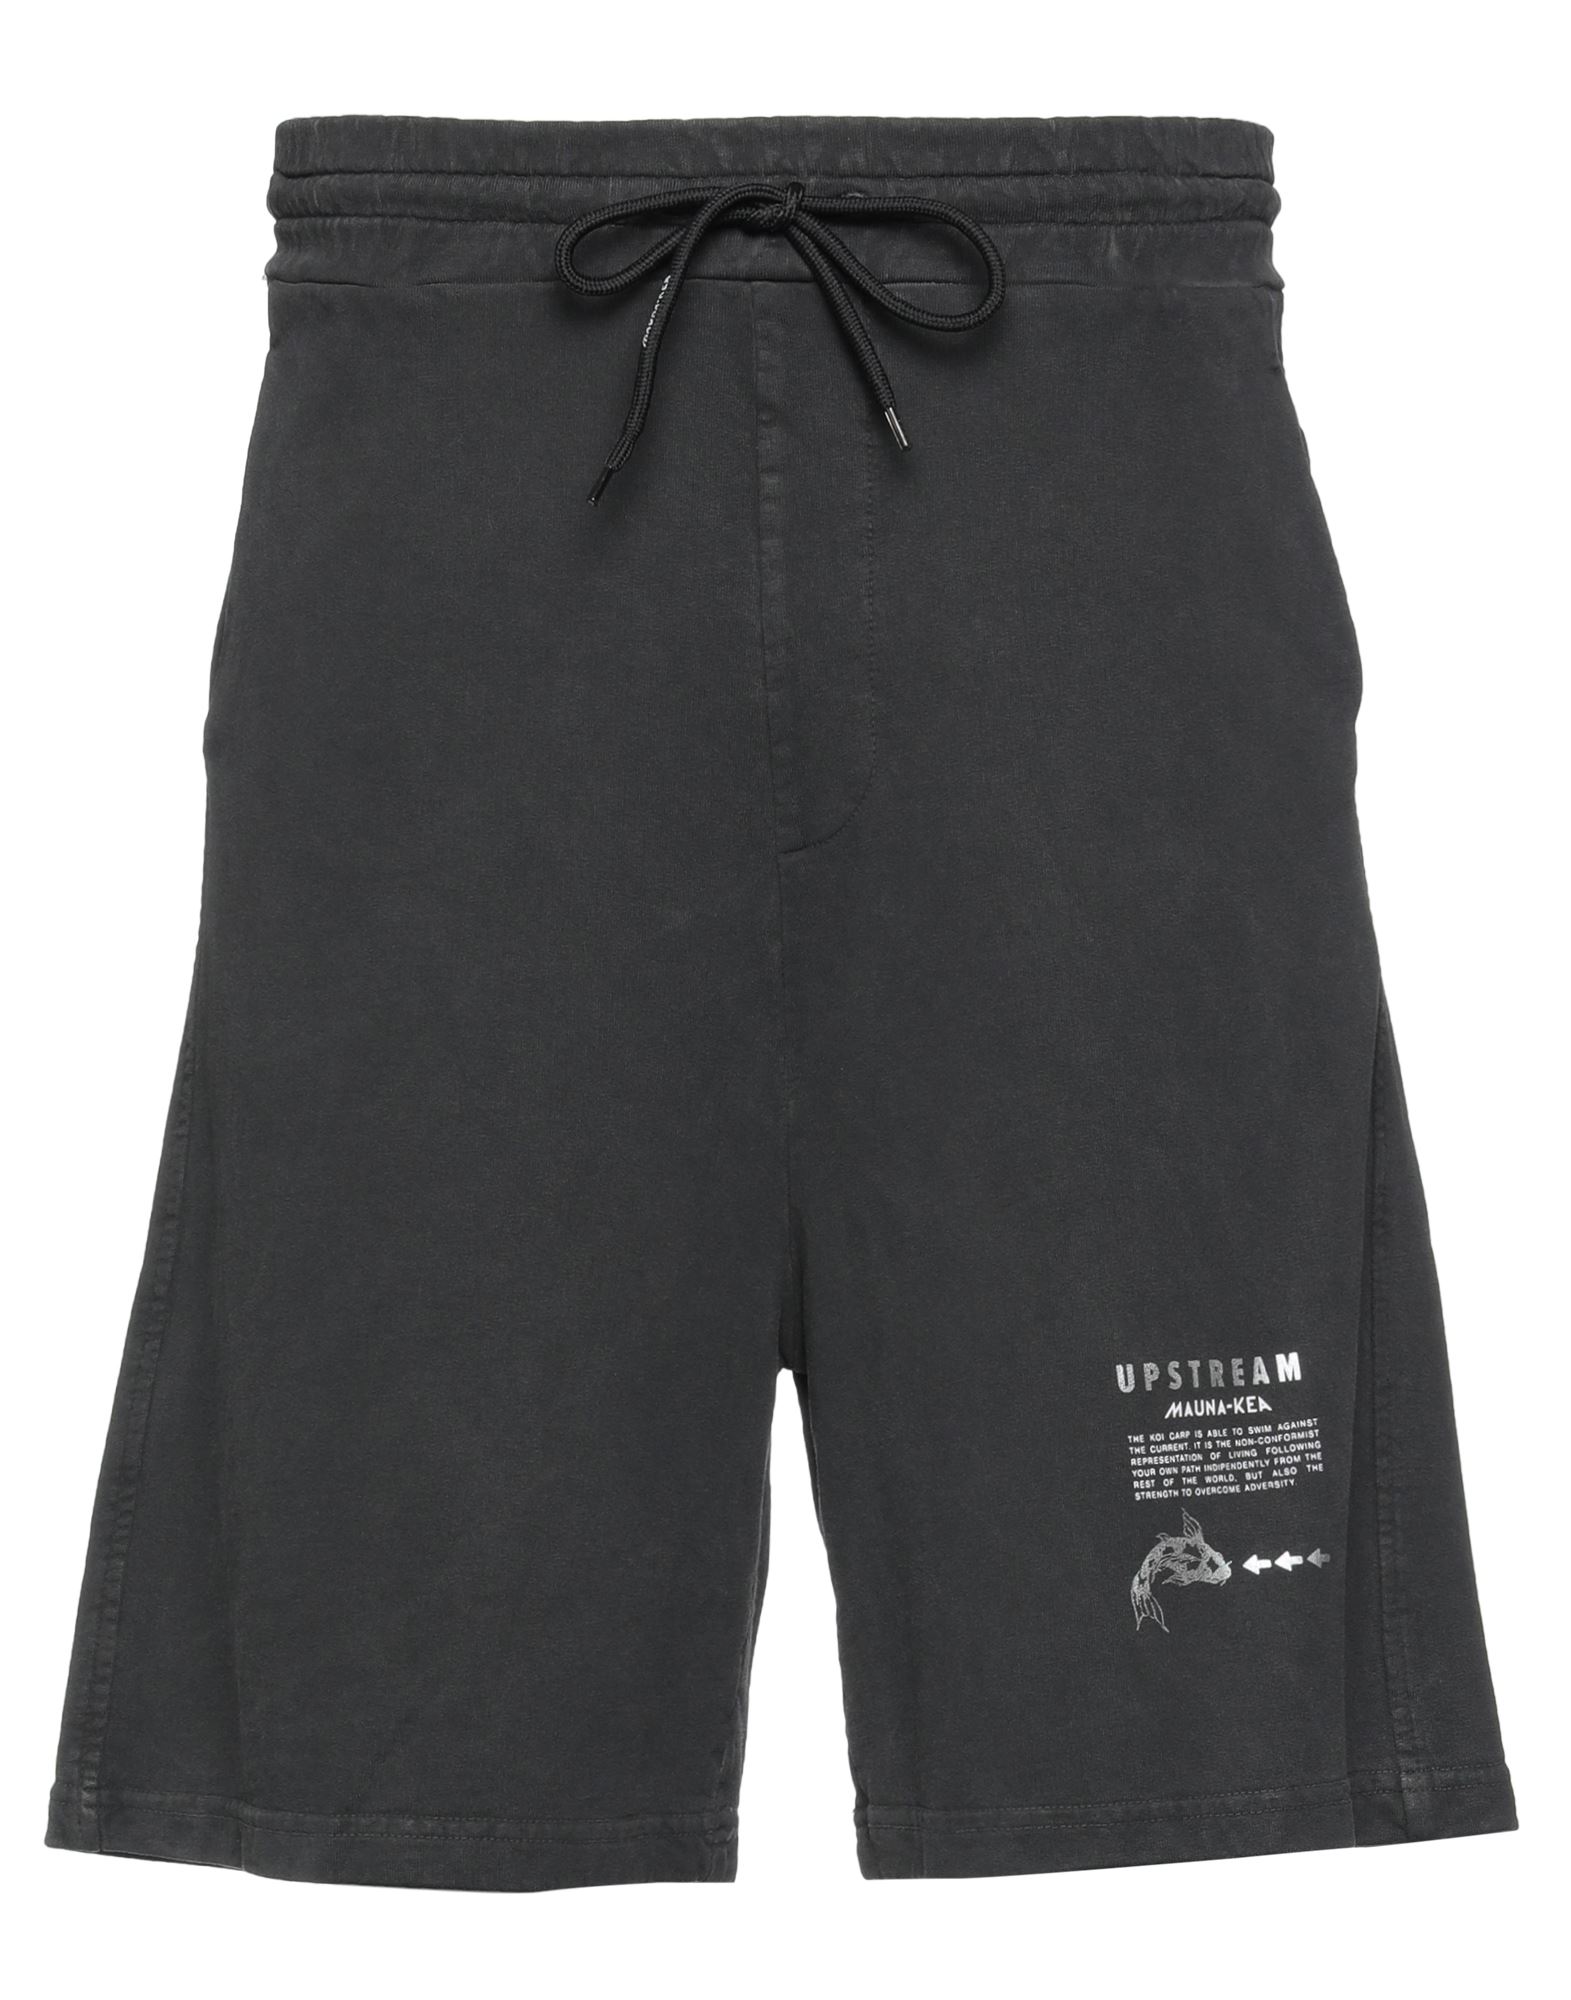 Mauna Kea Man Shorts & Bermuda Shorts Steel Grey Size S Cotton